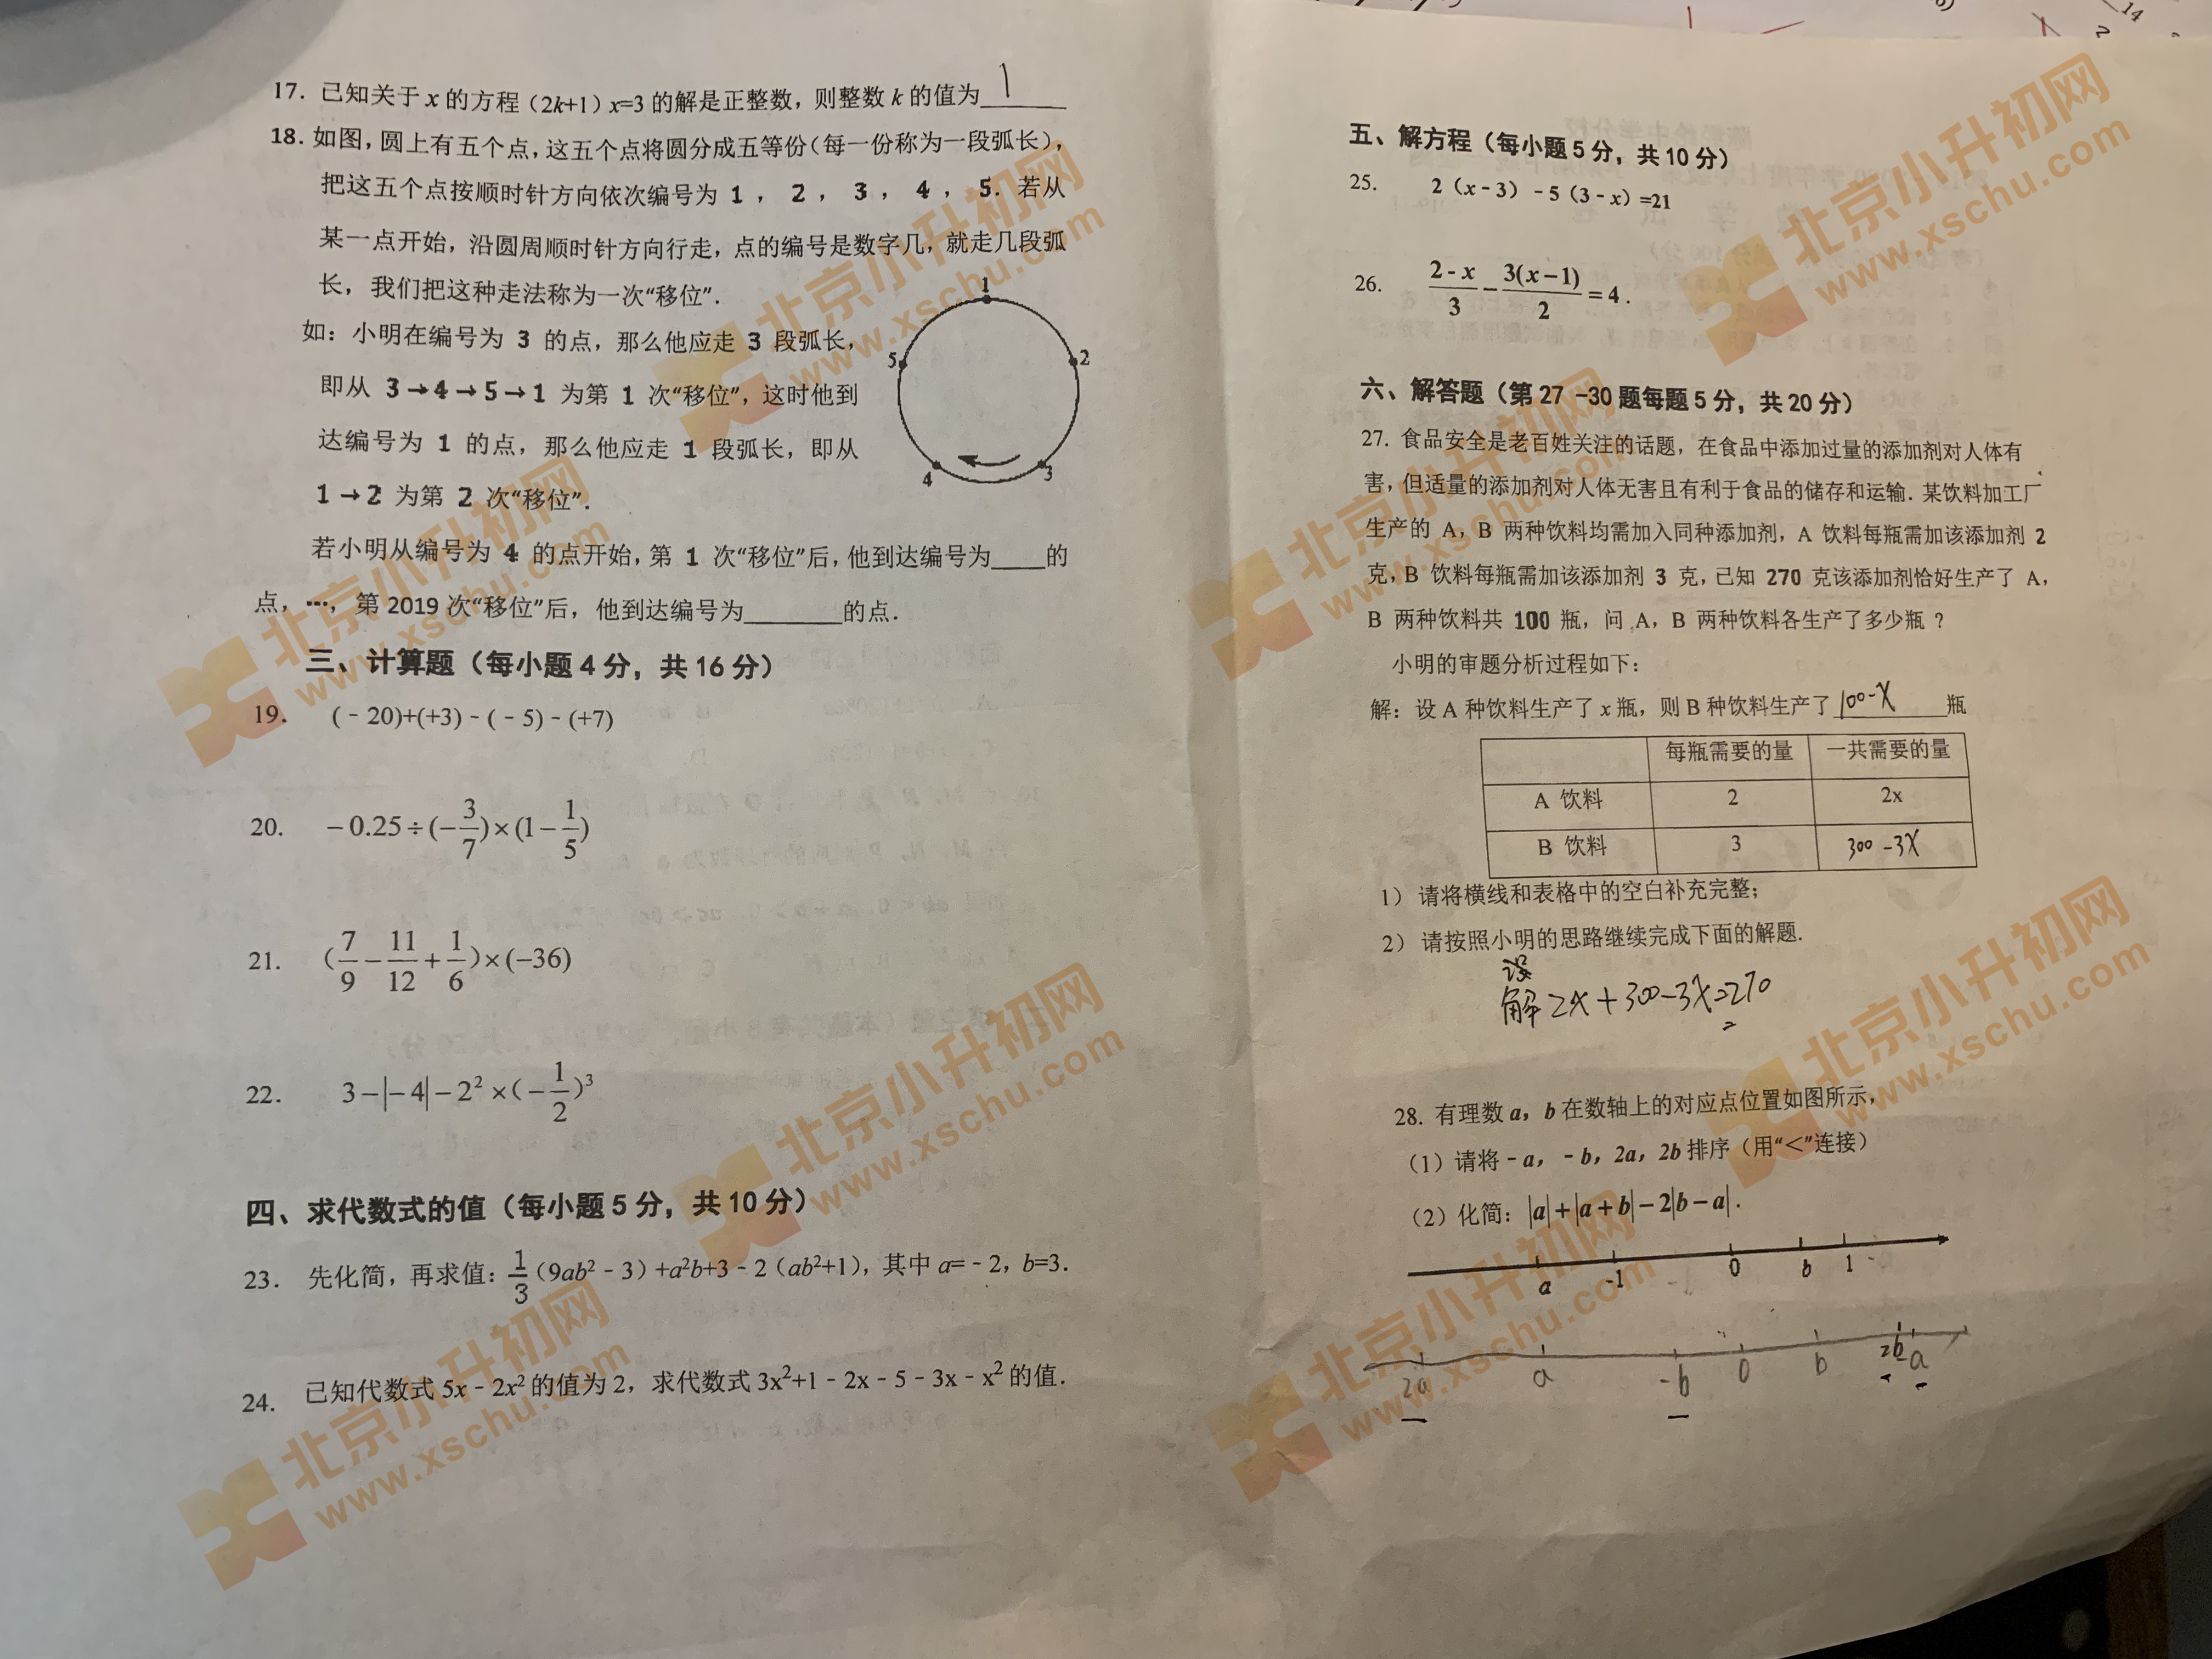 陈经纶中学分校2019-2020年第一学期初一期中考试数学试题2